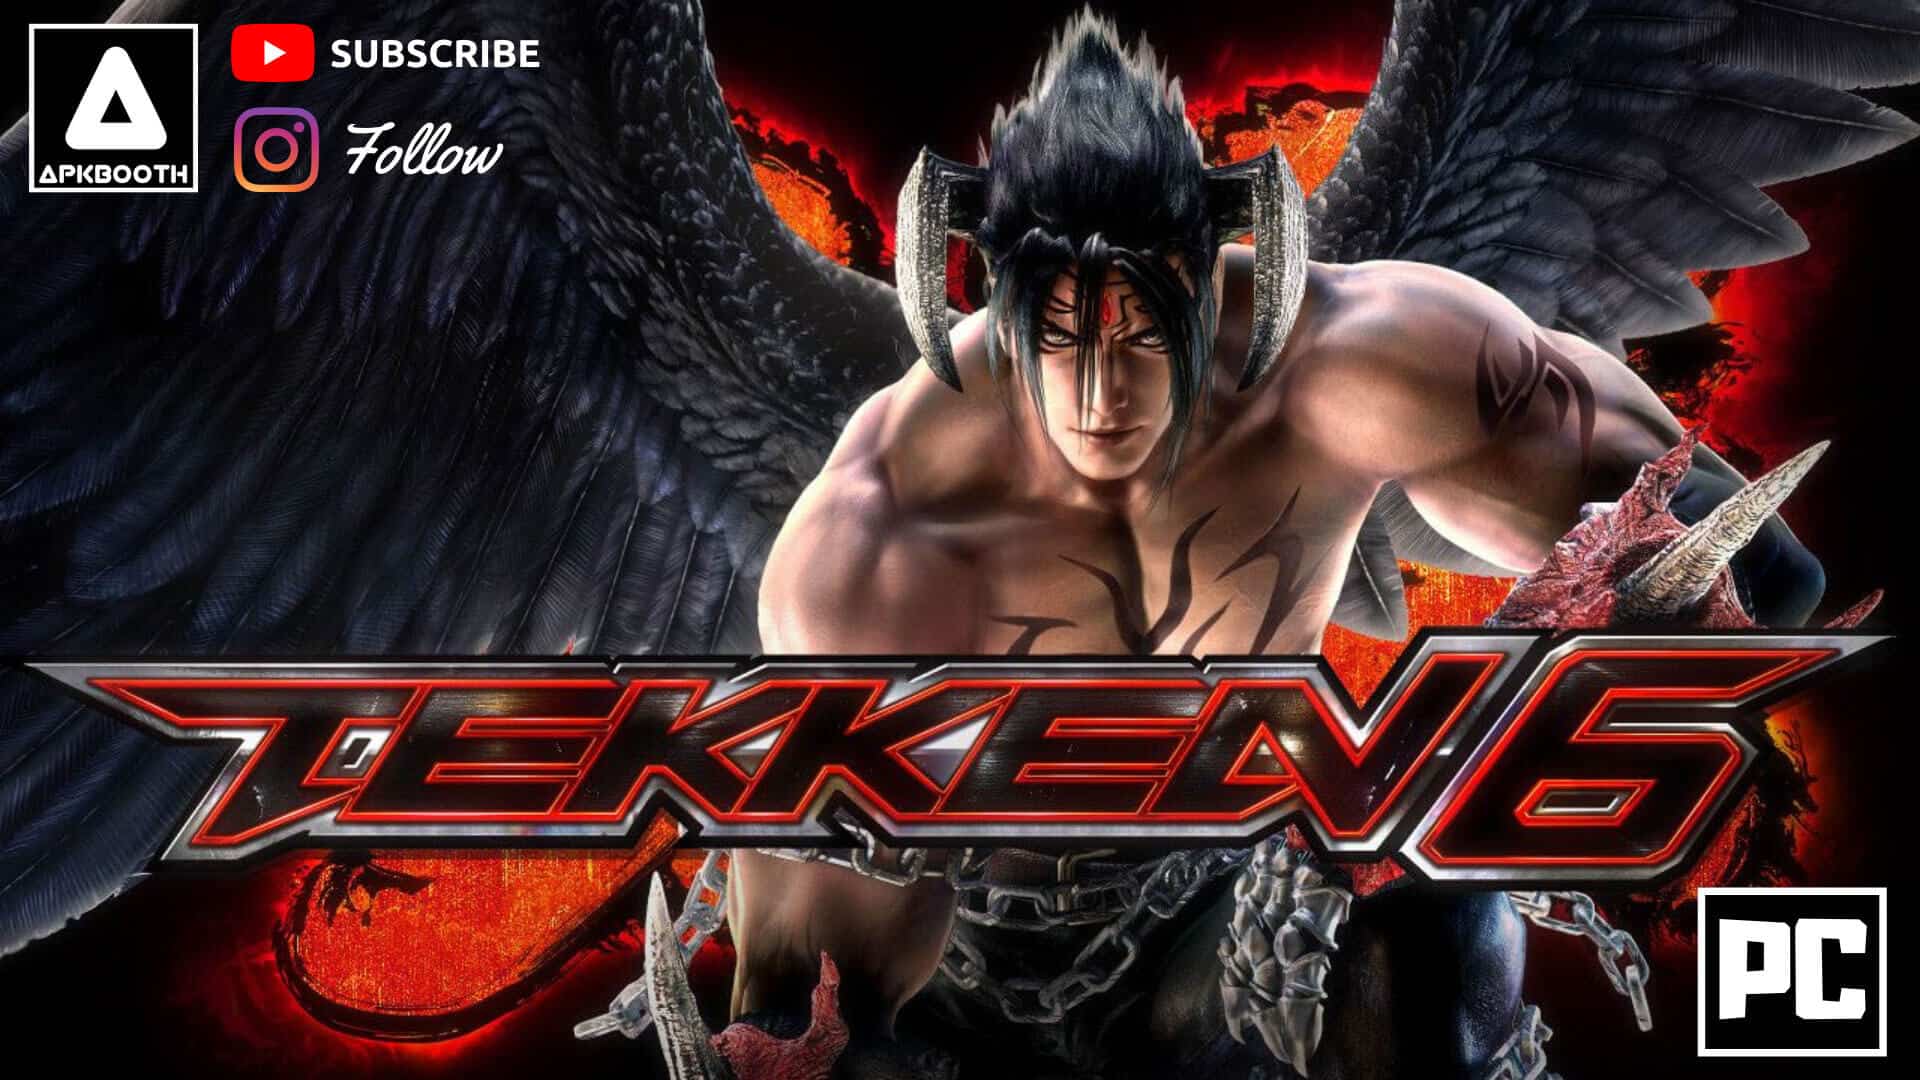 Tekken 6 Game Setup For Pc Highly Compressed Free Download